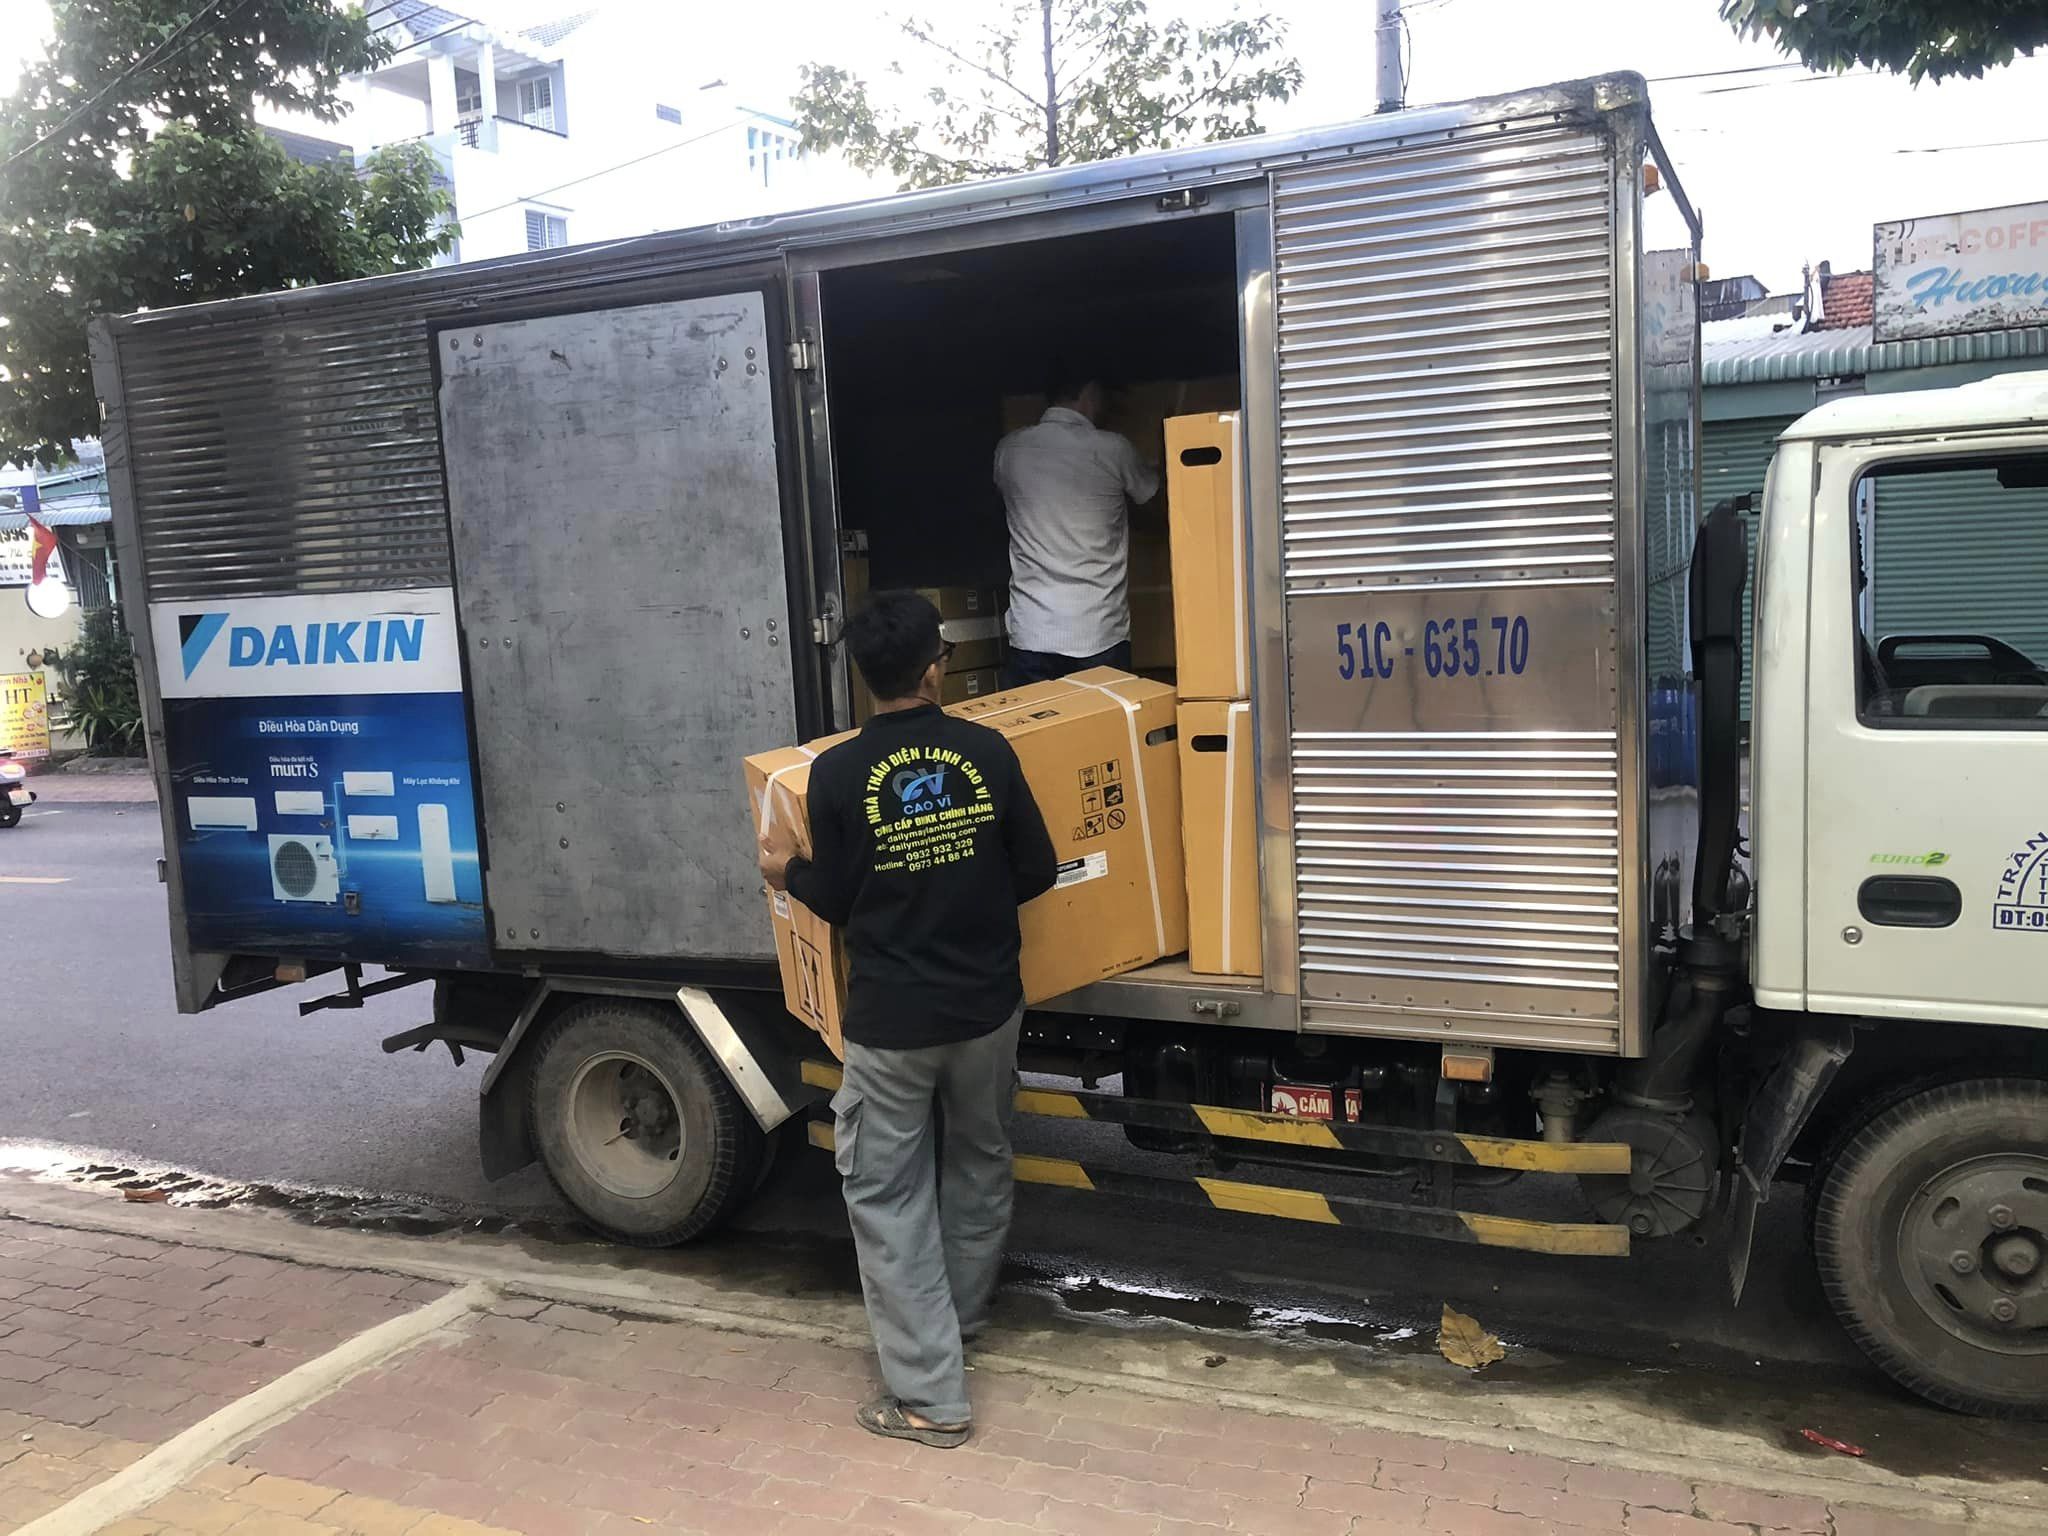 Lắp đặt máy lạnh Quận Tân Bình giá rẻ miễn phí, nhanh chóng trong trường hợp đã chấp nhận bán máy lạnh cũ ở tại quận Tân Bình hcm.